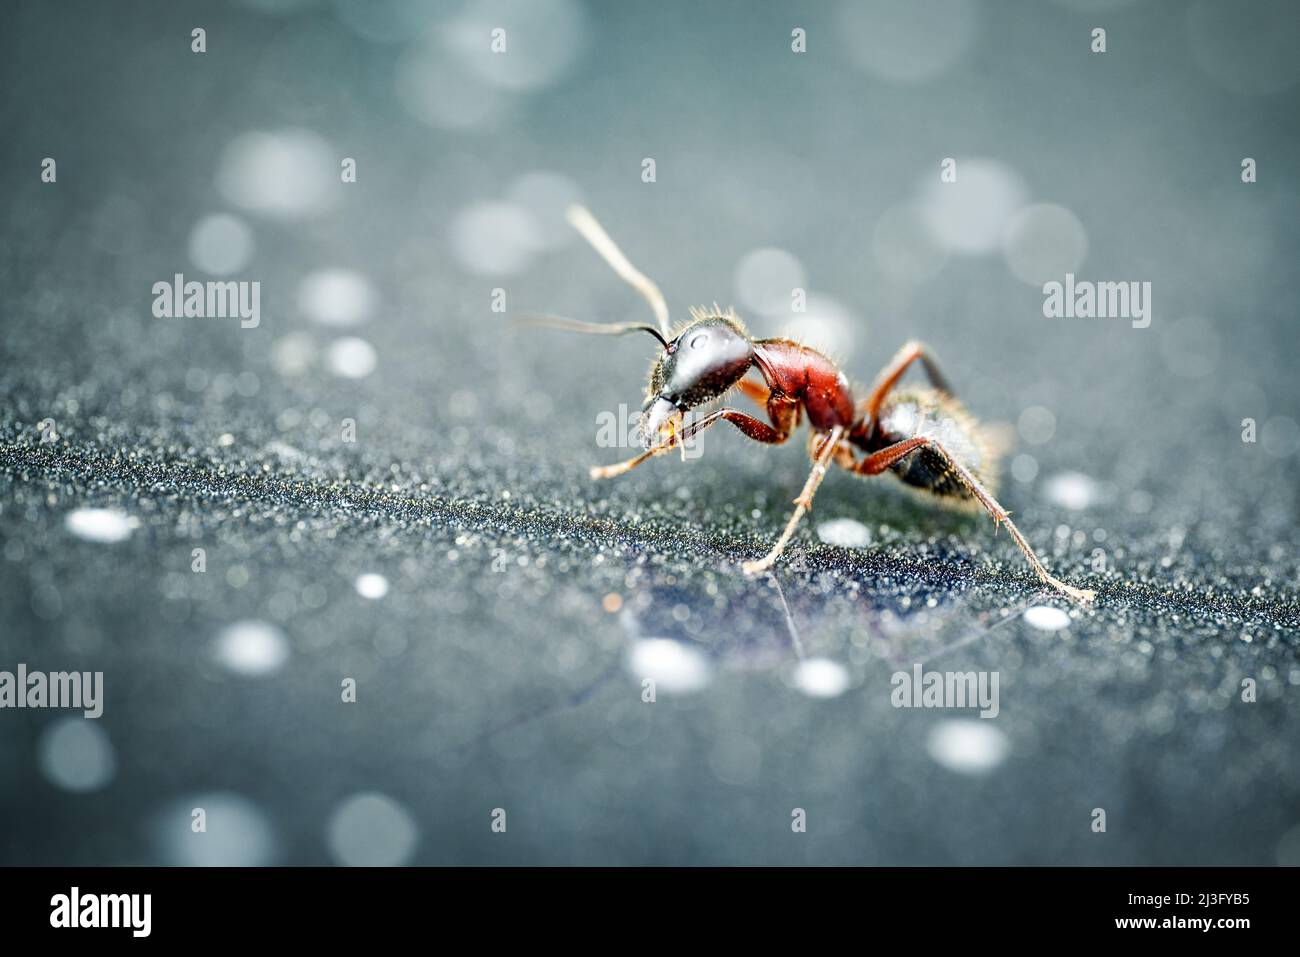 Macro fotografia di una sola formica con dettaglio. Primo piano, si innnsect isolato su sfondo sfocato. Foto di alta qualità Foto Stock